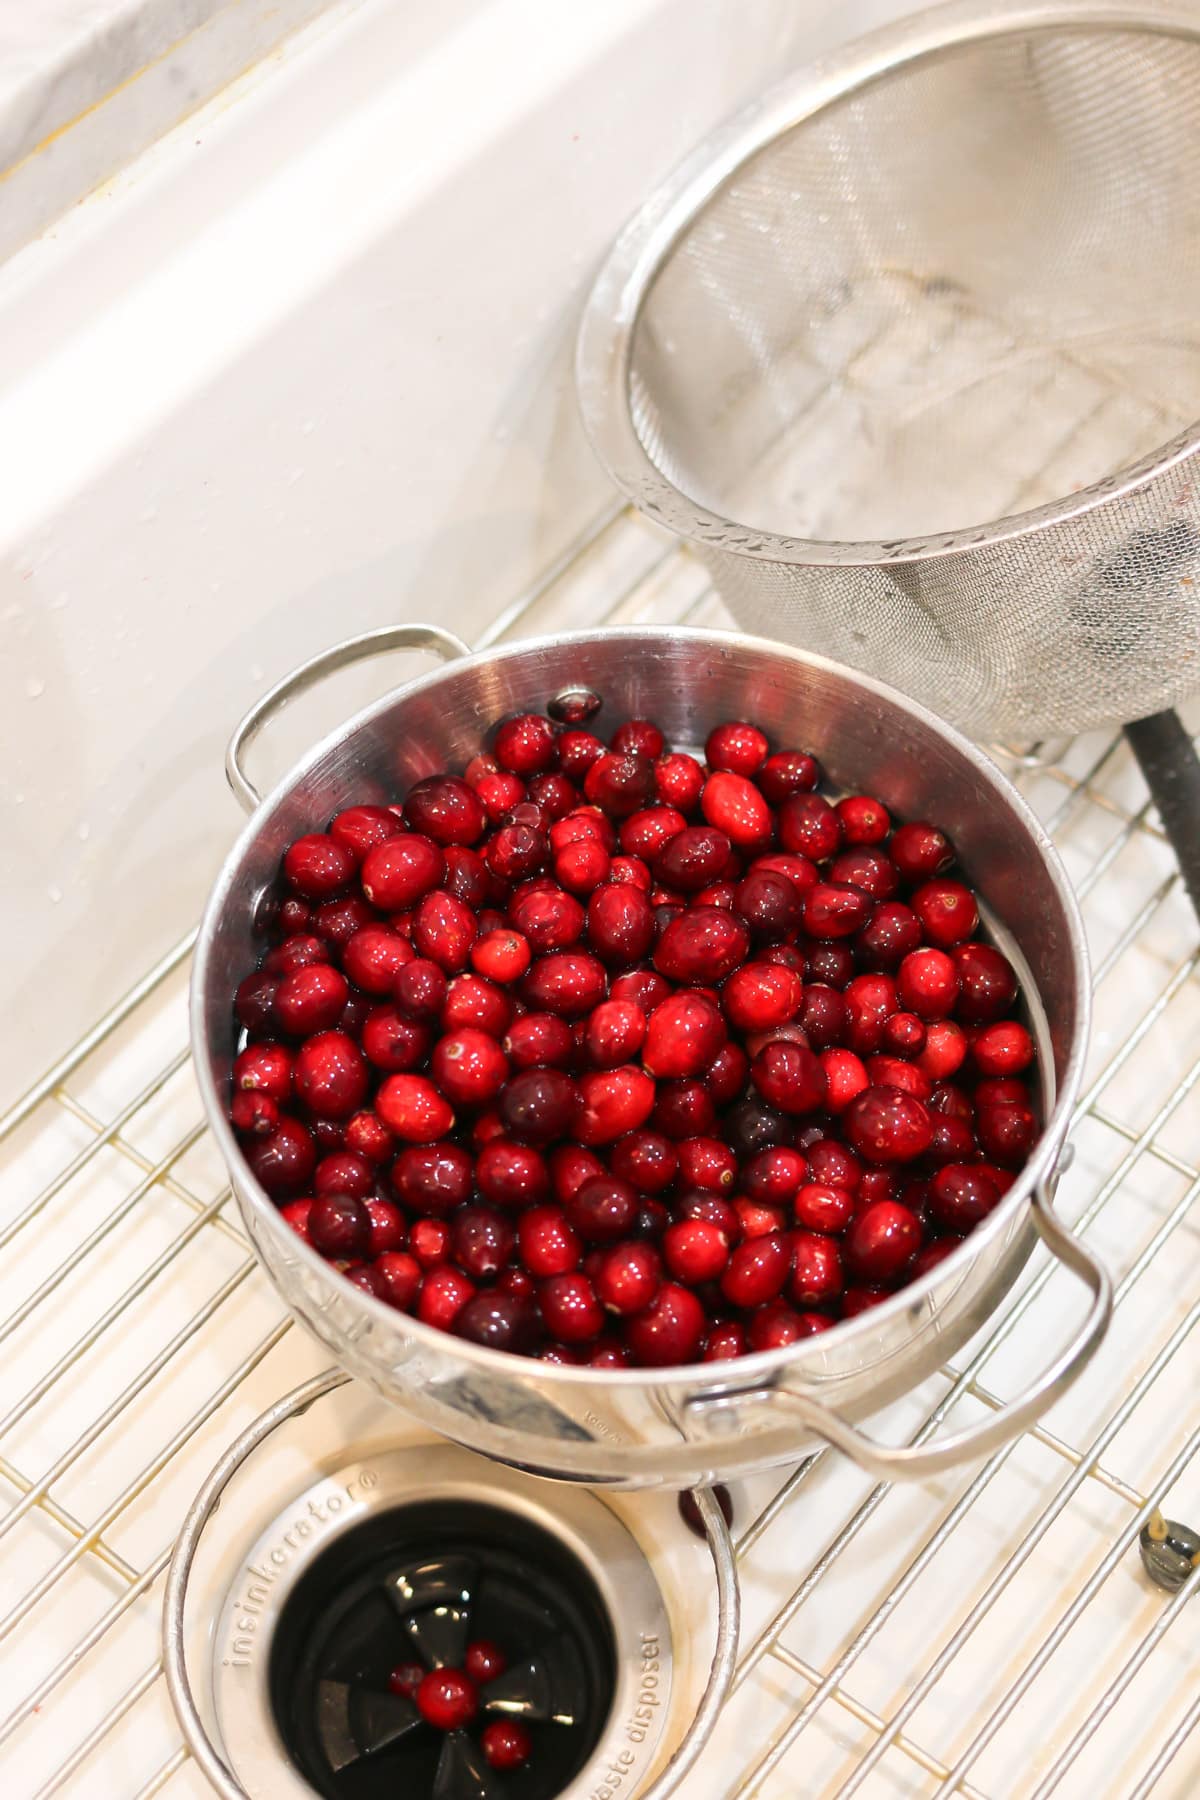 washing fresh cranberries